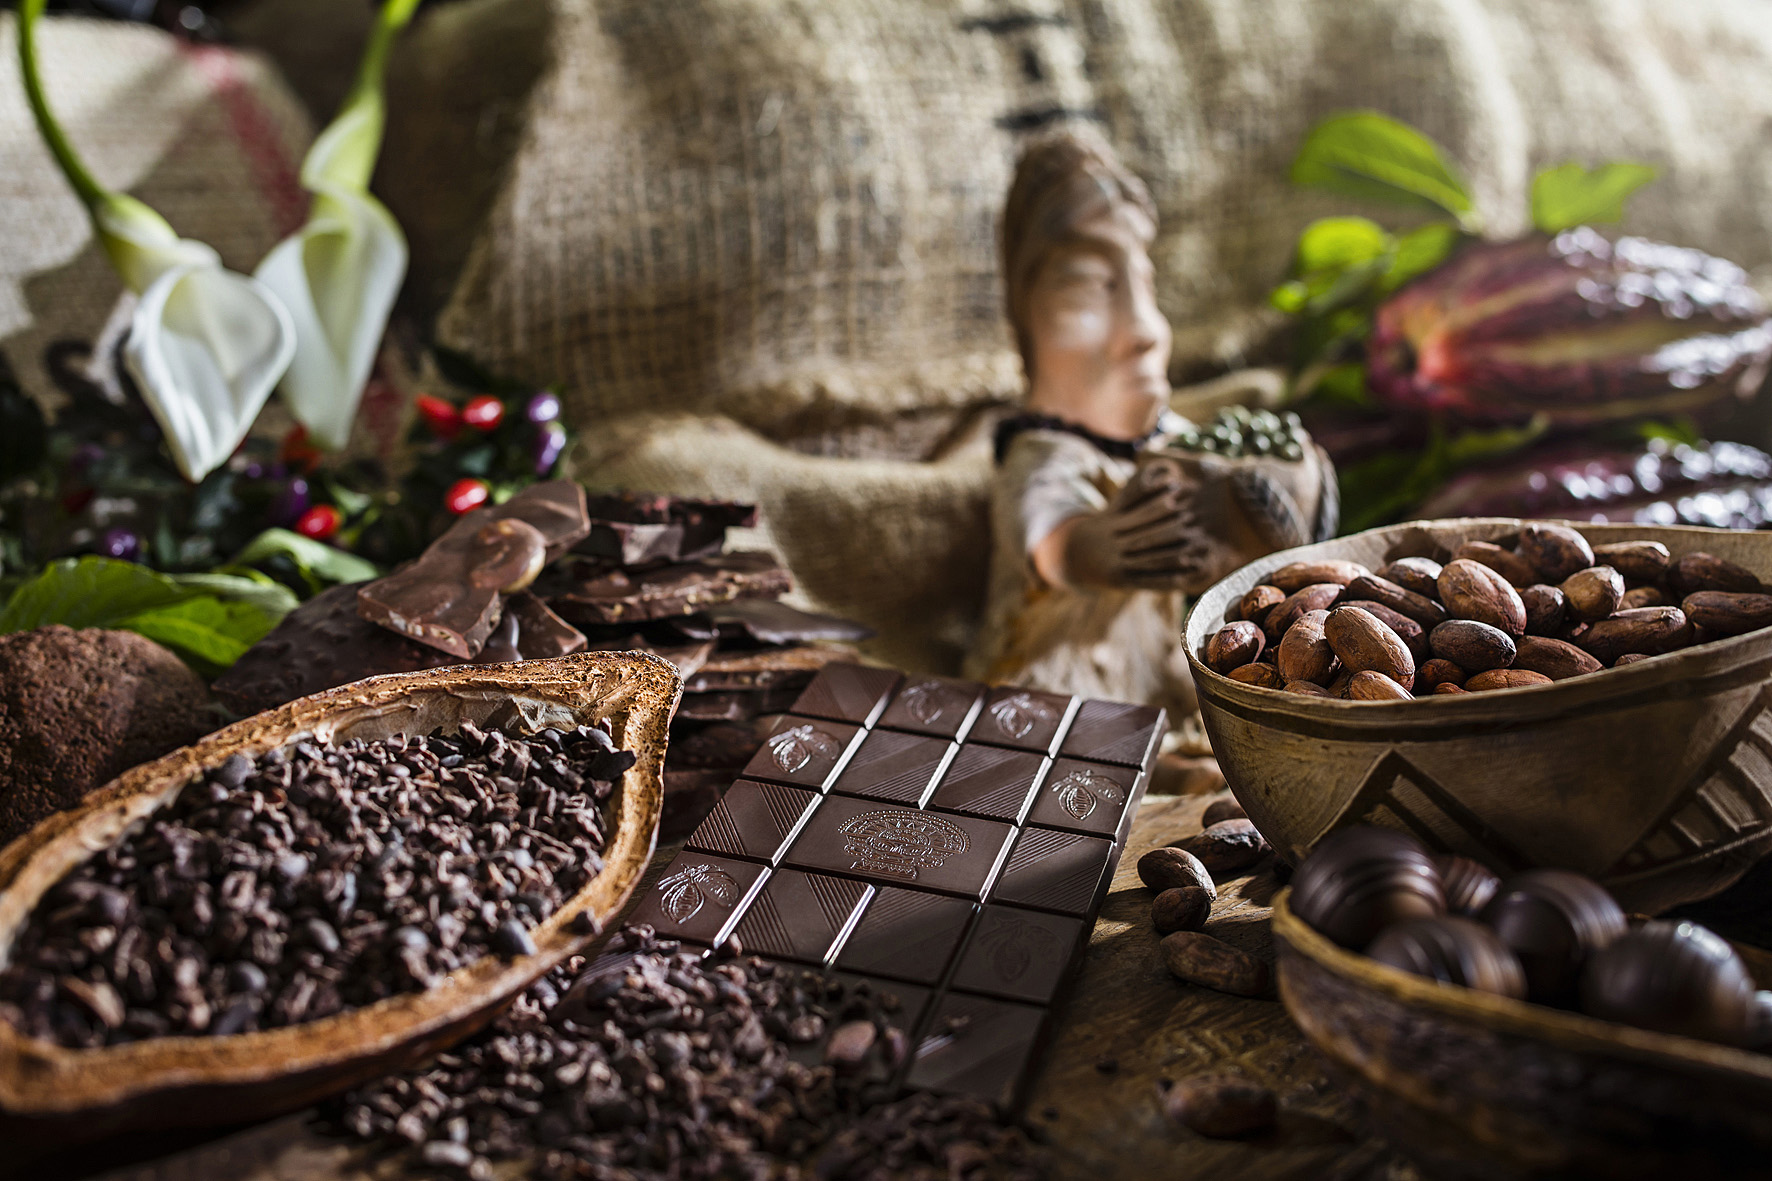 90 Min. Schokoladen-Workshop und -Tasting inkl. mexikanische Trinkschokolade für 2 Personen bei Soirée Chocolat